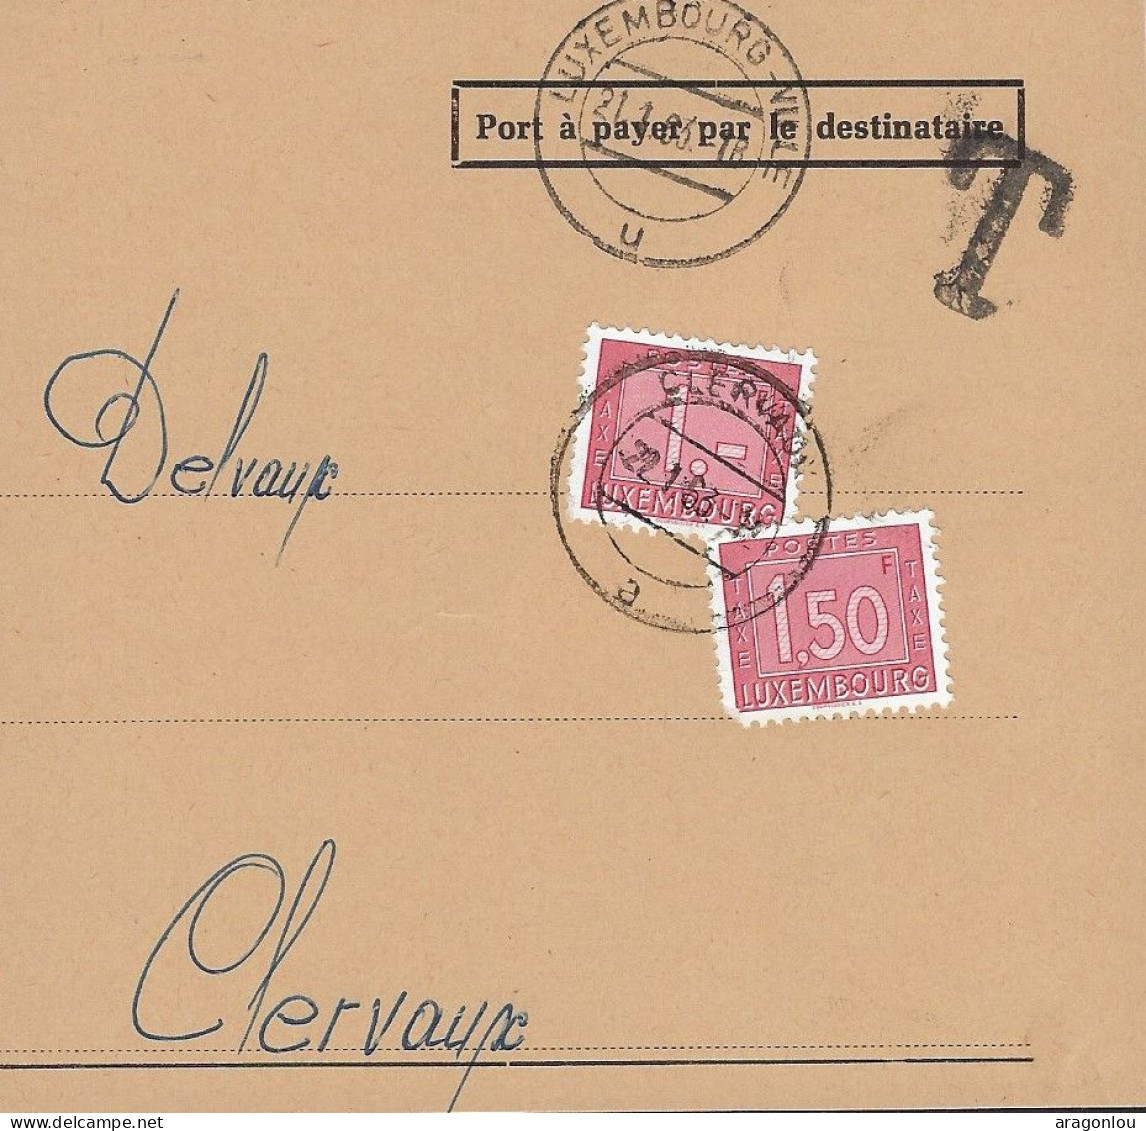 Luxembourg - Luxemburg -   Avant-Lettre  Taxe   1963   Mr Delvaux , Clervaux - Portomarken